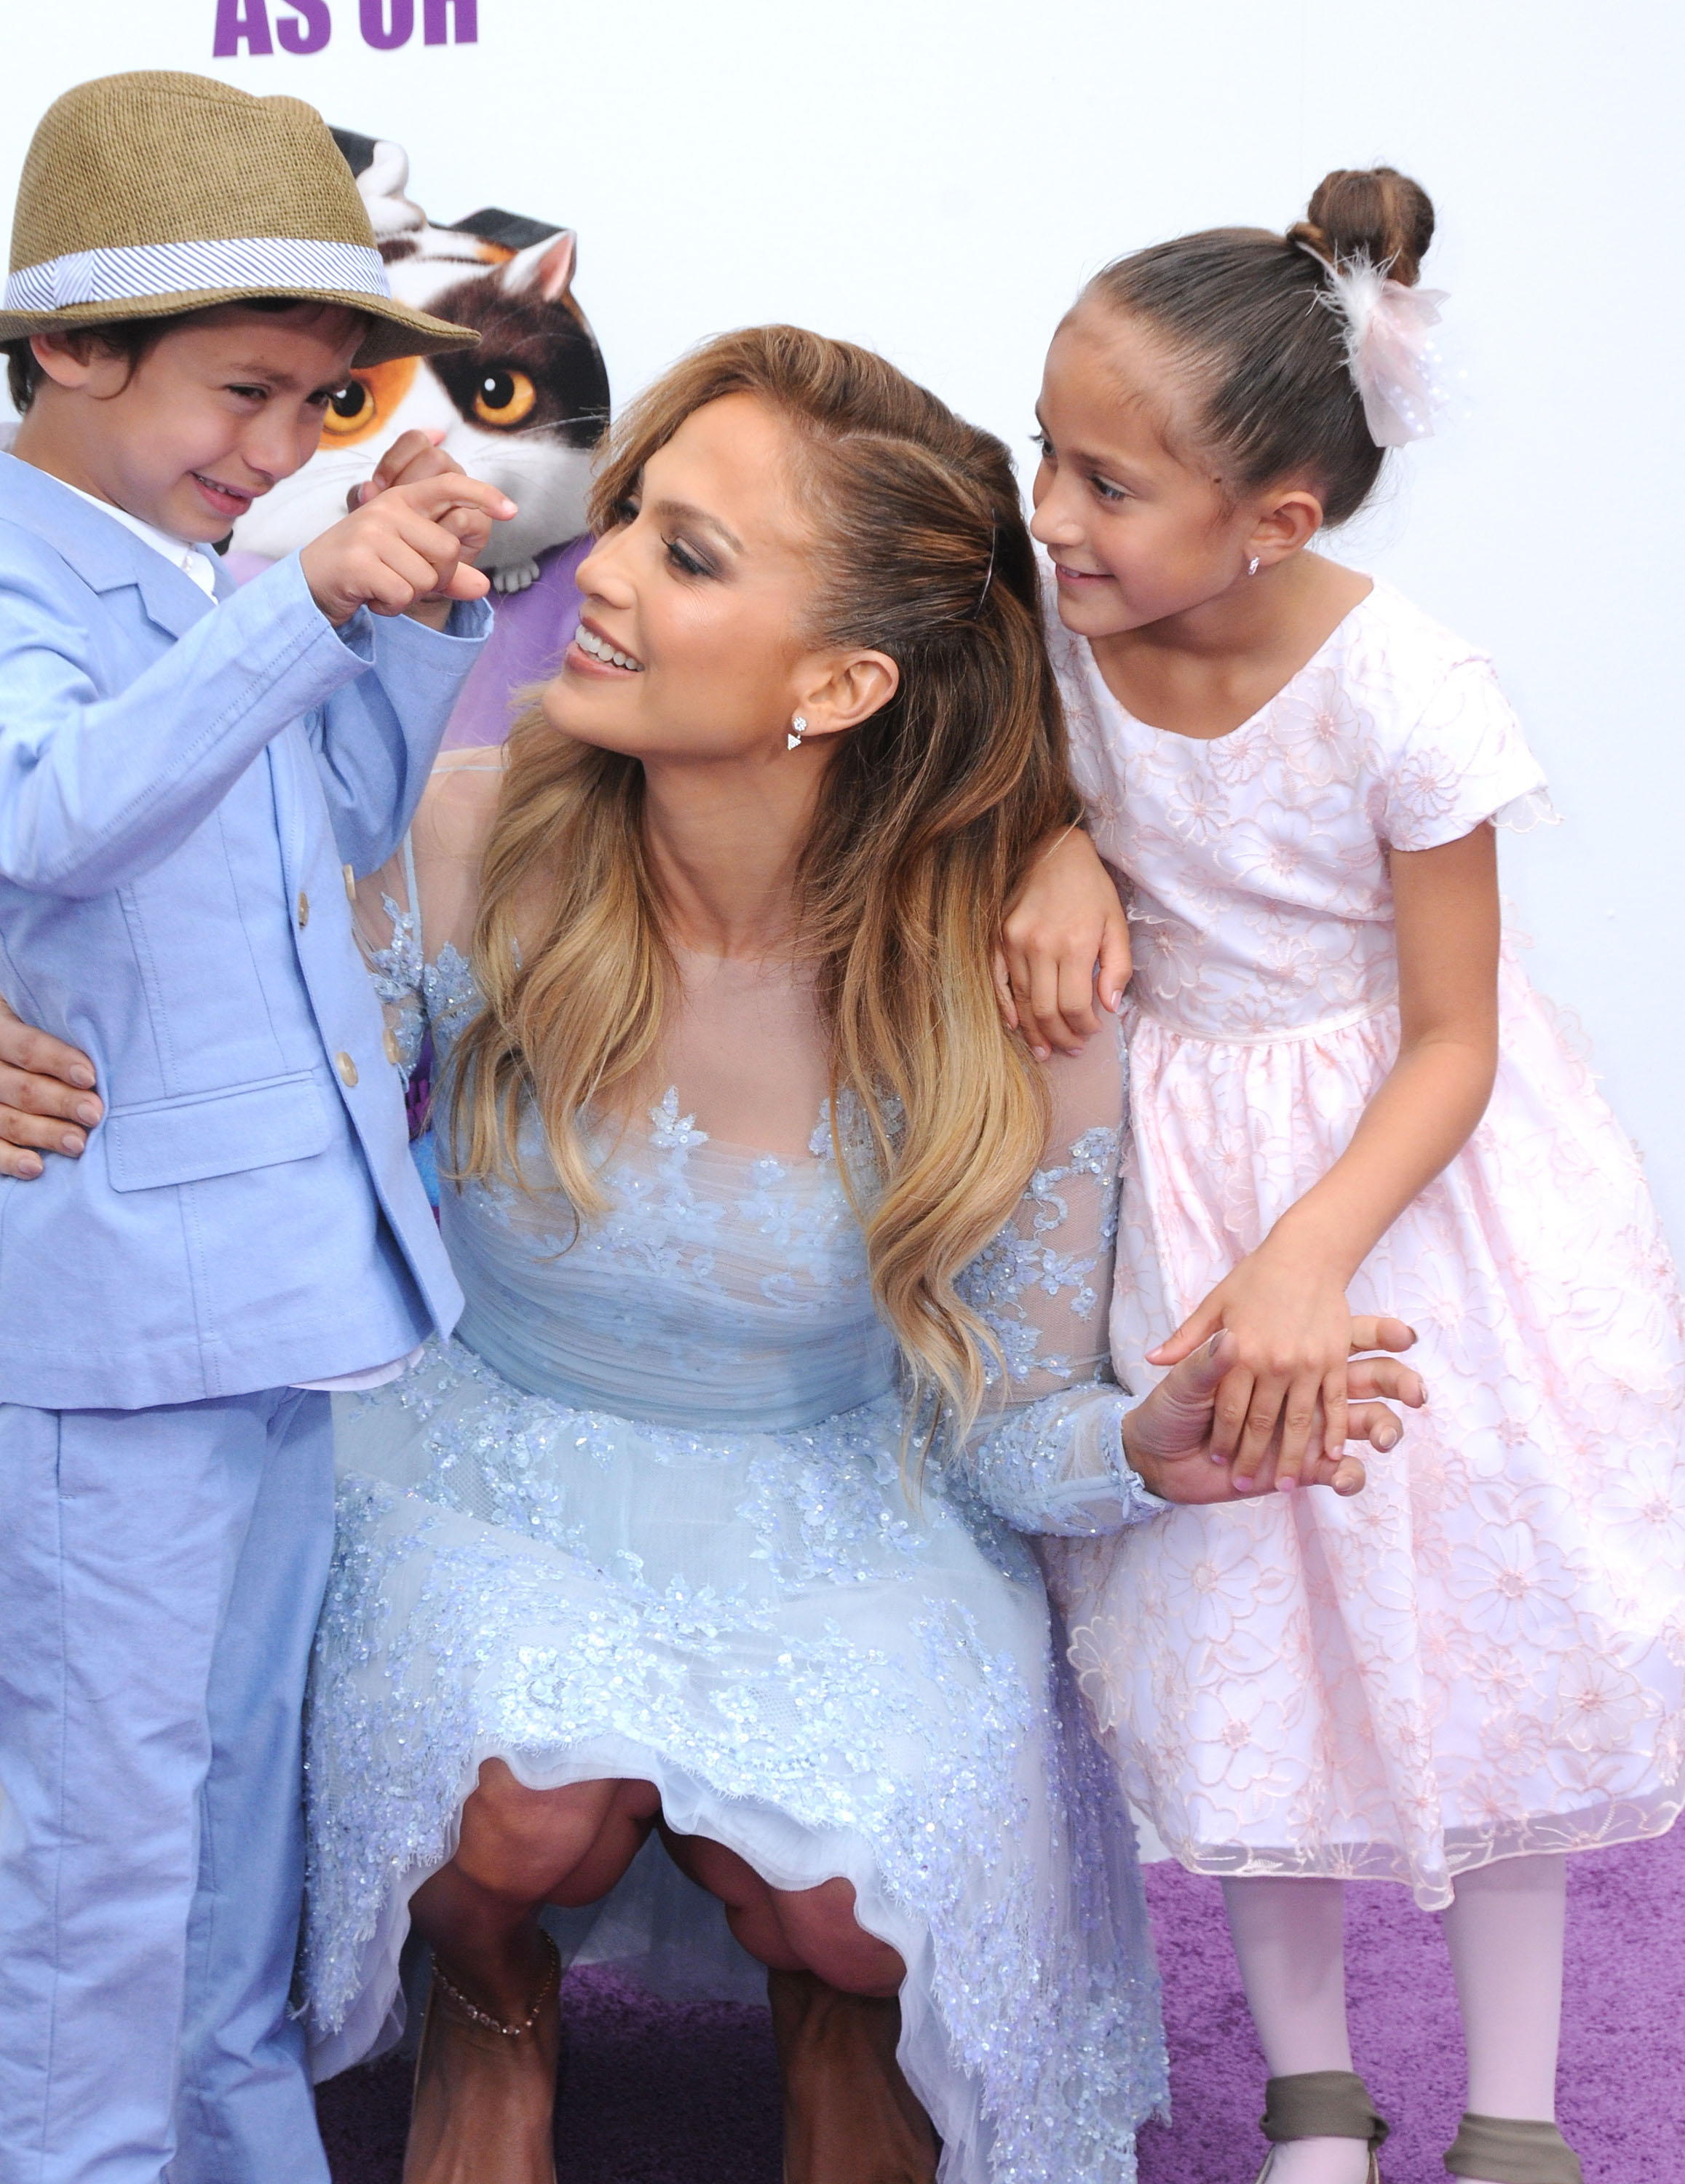 Jennifer Lopez, begleitet von ihrem Sohn Maximillian David Muniz und ihrer Tochter Emme Maribel Muniz, bei der Premiere von Twentieth Century Fox und Dreamworks Animation's "Home" am 22. März 2015 in Westwood, Kalifornien | Quelle: Getty Images